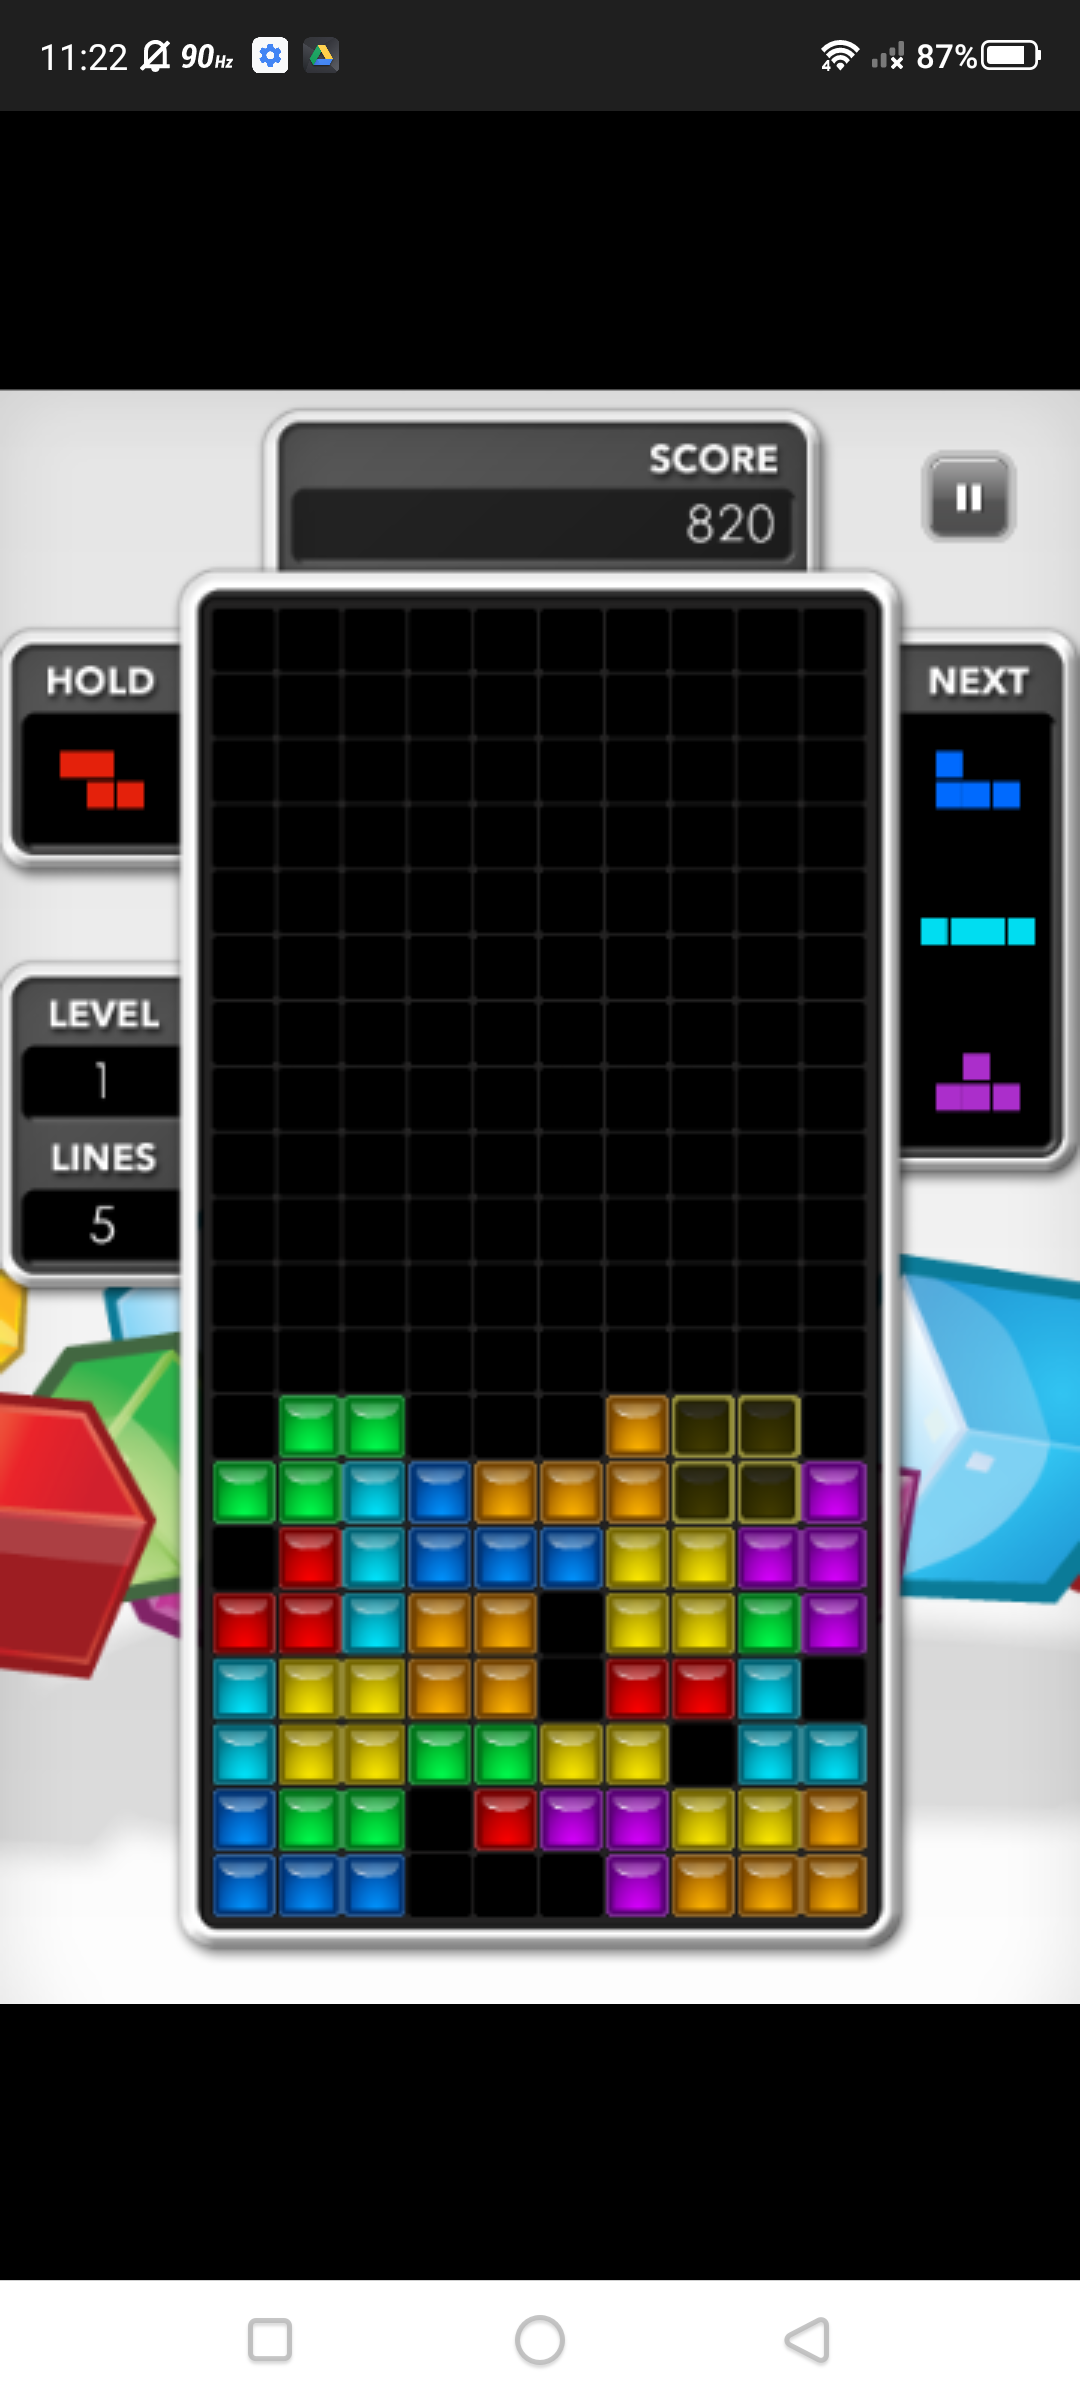 Screenshot of web-based mobile game Tetris gameplay.